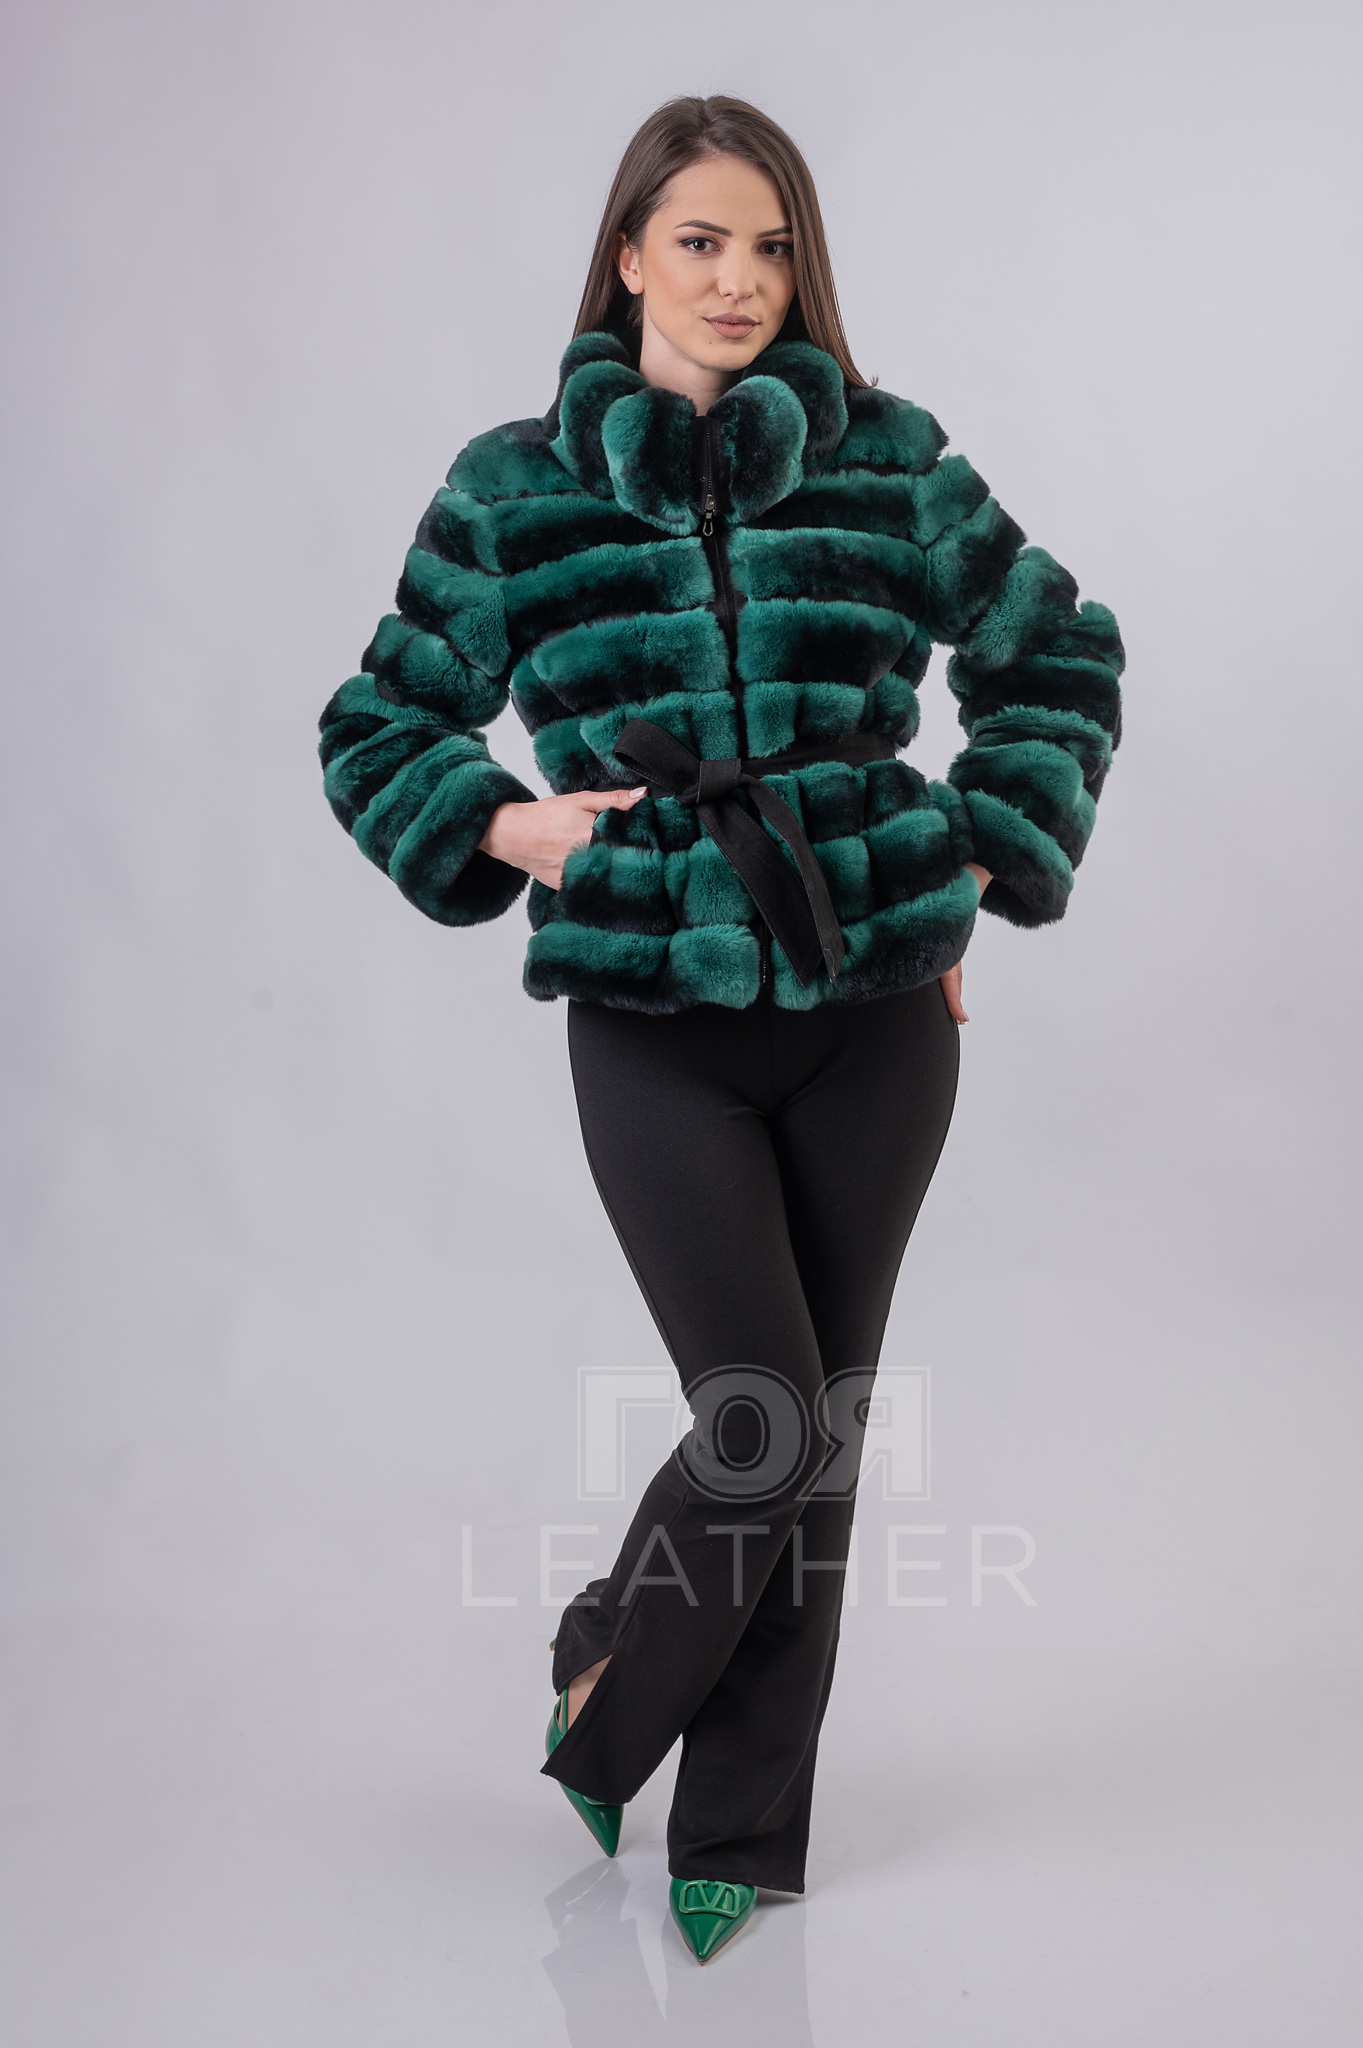 Късо палто от рекс-чинчила от ГОЯ Leather. Нов модел кожено палто изработено от качествена естествена кожа от рекс- чинчила. Красив и модерен цвят, меланж от зелено и черно. Леко, топло и модерно палто.